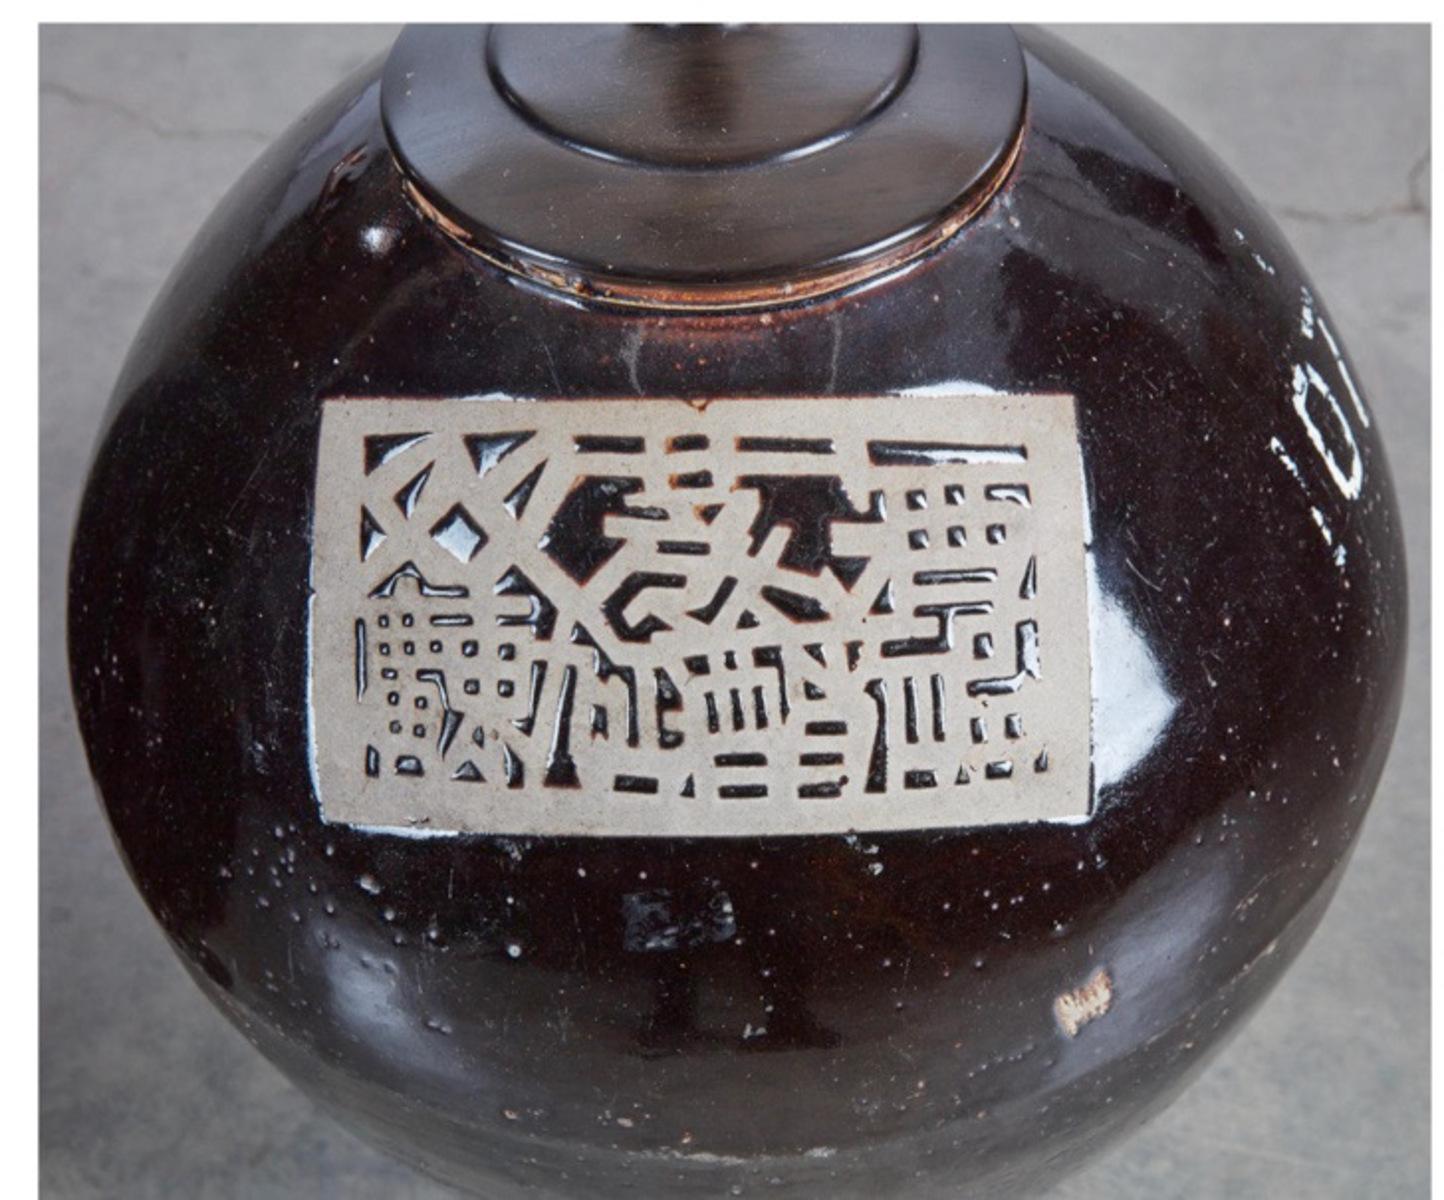 Dies ist ein ungewöhnliches Lampenpaar, das aus antiken japanischen Vorratsgläsern aus dem 19. Jahrhundert hergestellt wurde und Billy Haines zugeschrieben wird. Die rustikale japanische Terrakotta-Keramik verleiht den Lampen eine erdige Qualität,